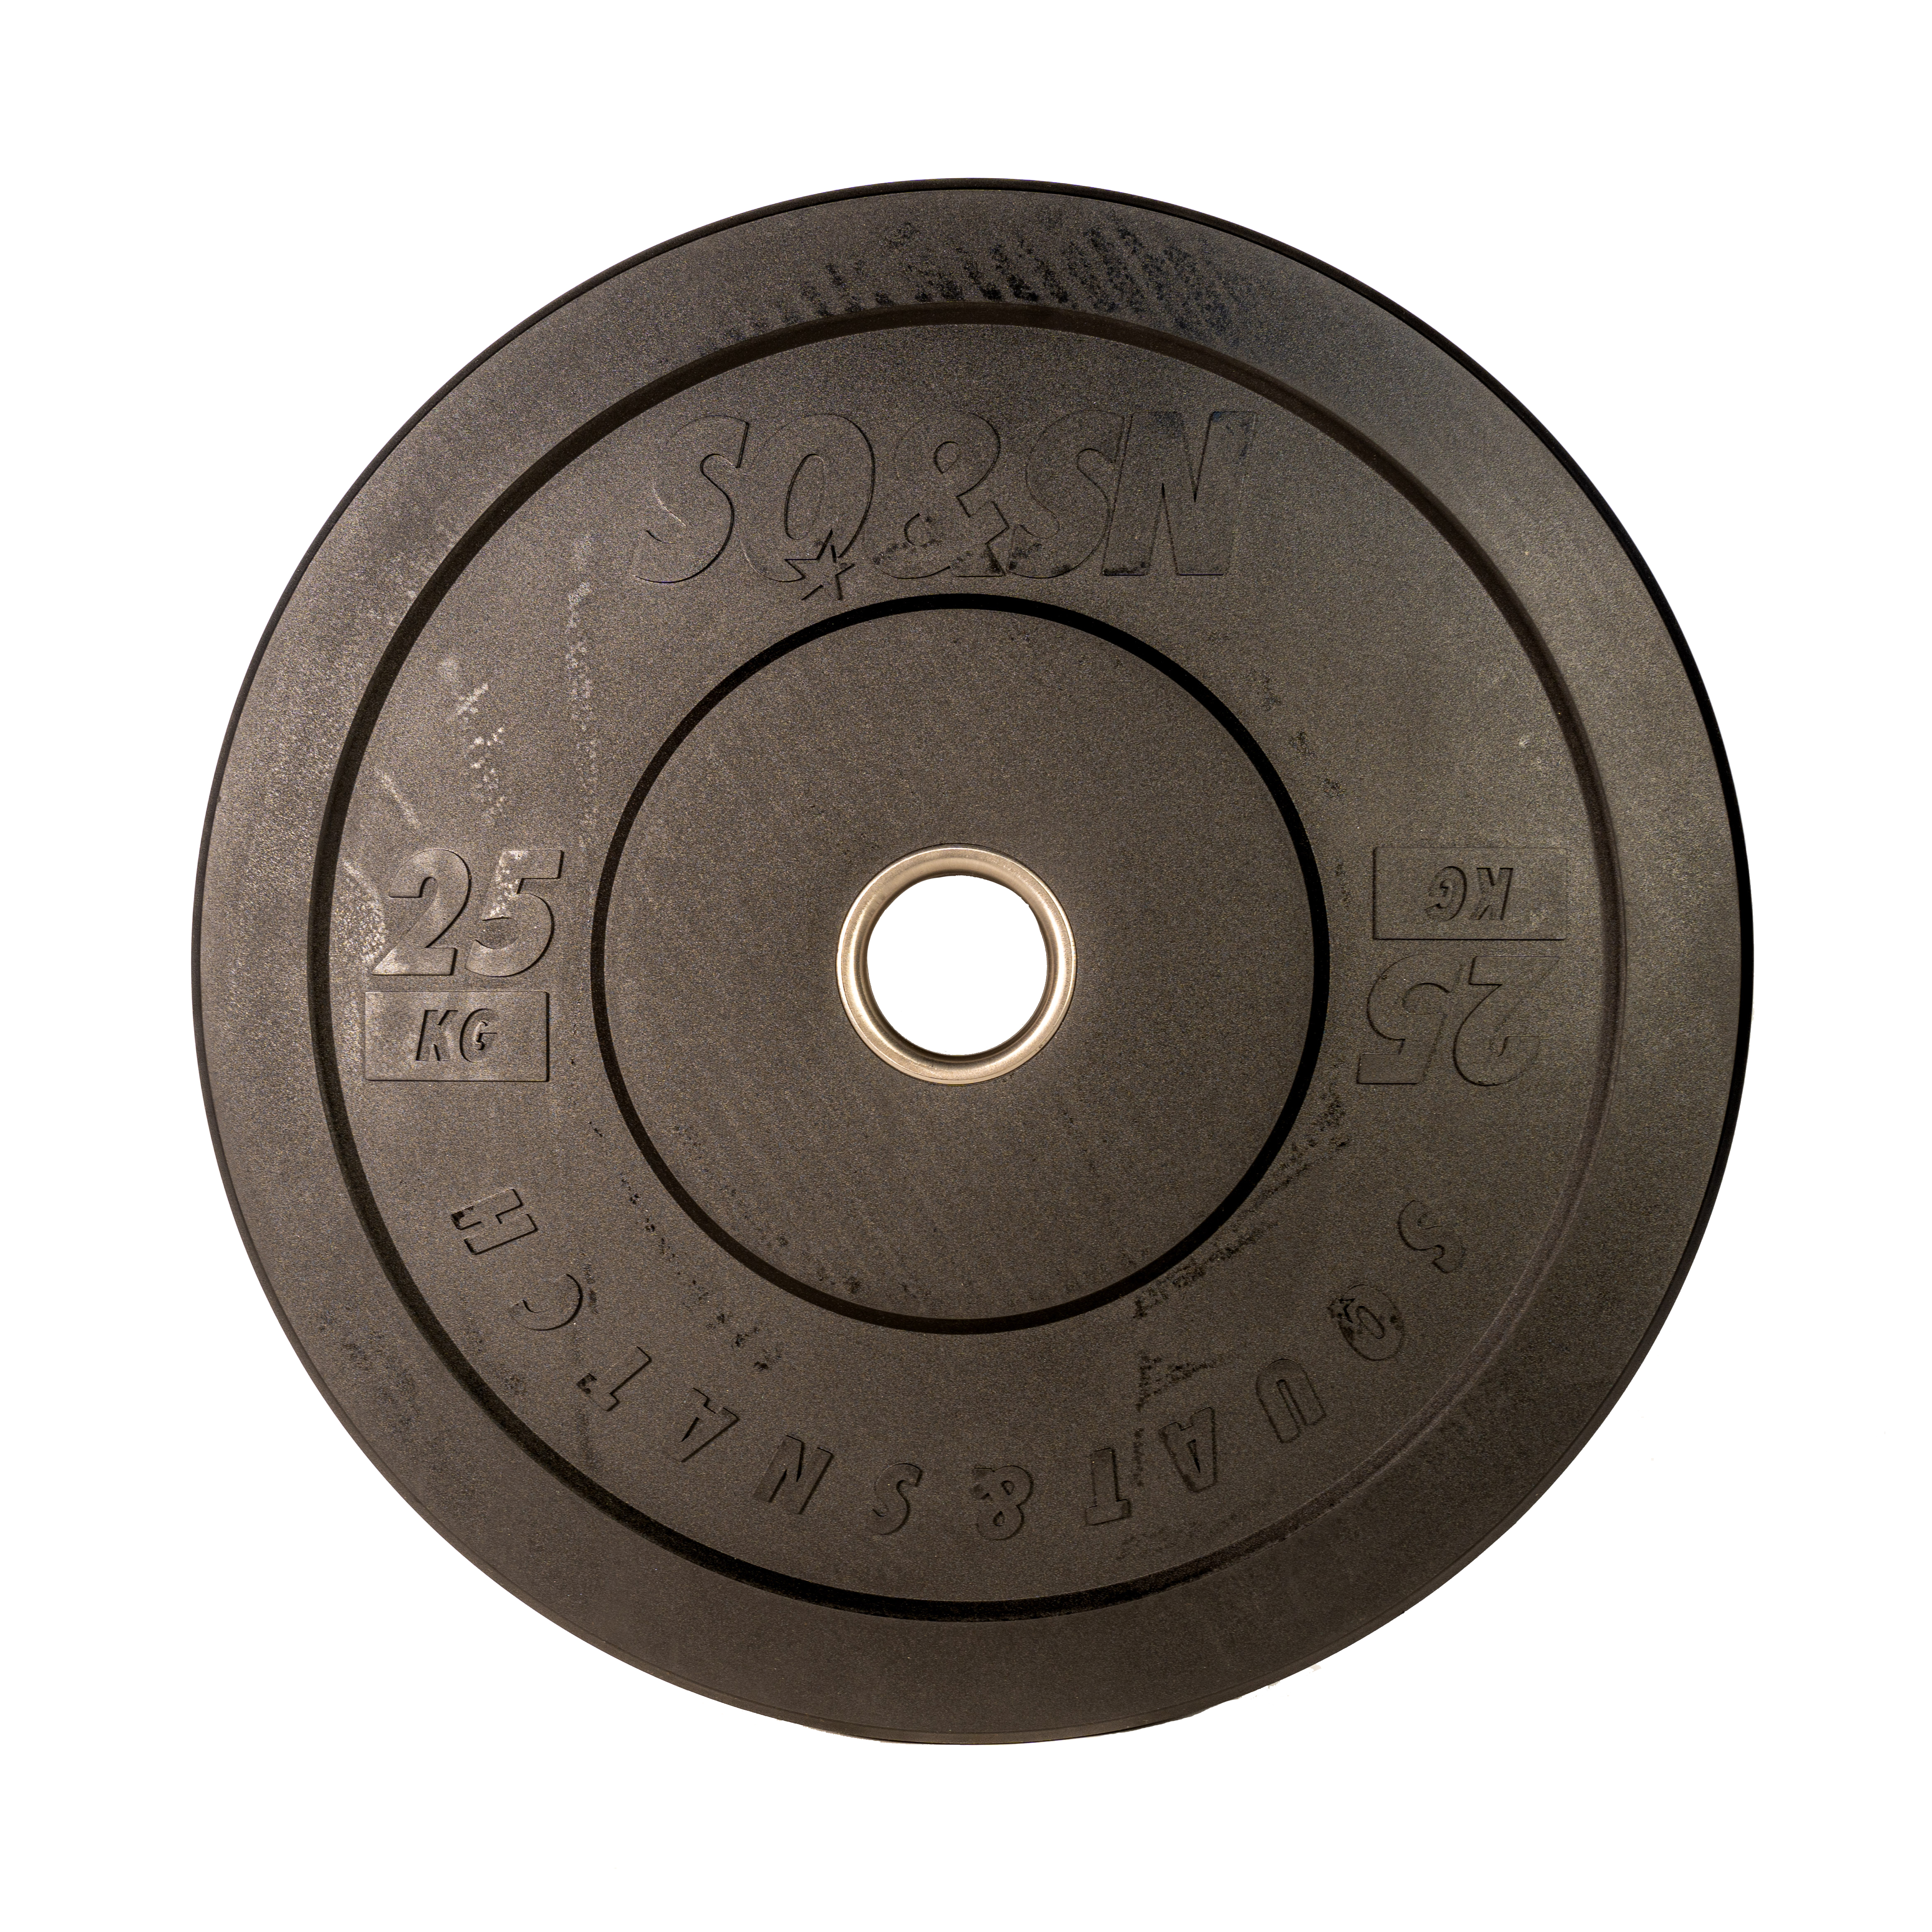 Brug SQ&SN Bumper Plate Vægtskive (25 kg) i sort. Udstyr til styrketræning, vægtløftning og crossfit træning til en forbedret oplevelse